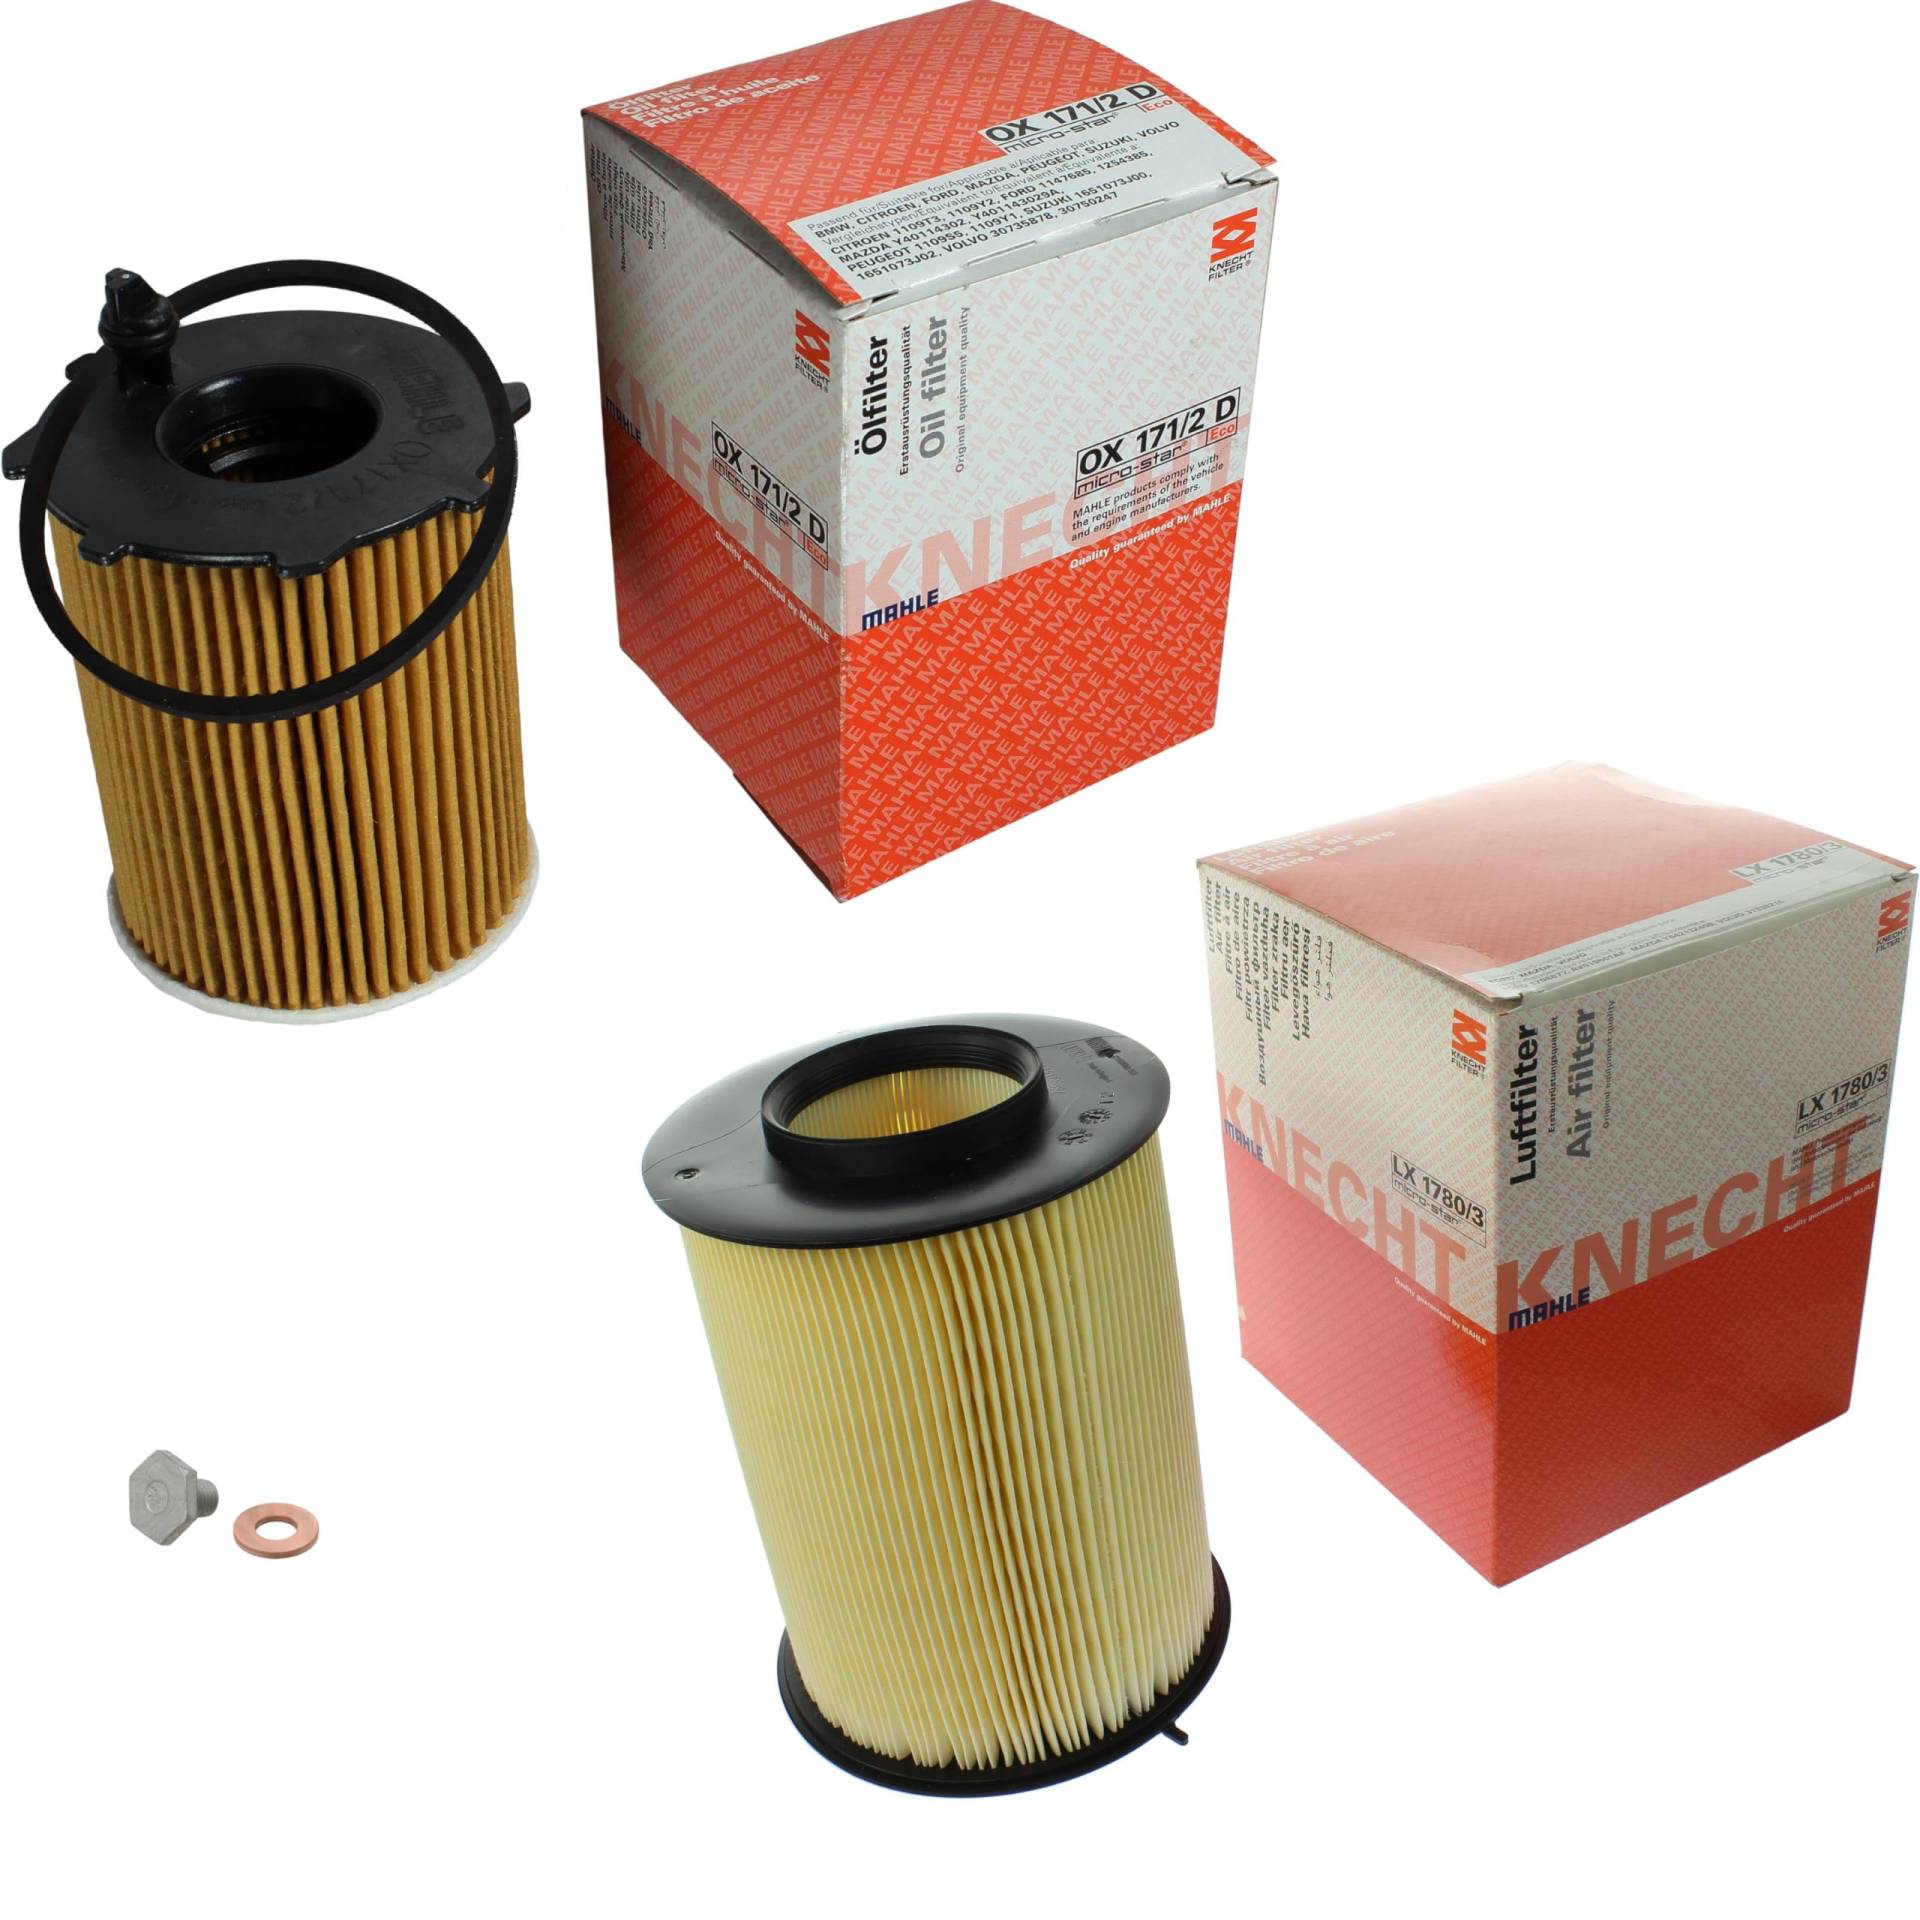 Inspektionspaket Wartungspaket Filterset mit Ölfilter OX 171/2D, Luftfilter LX 1780/3, Verschlussschraube von EISENFELS